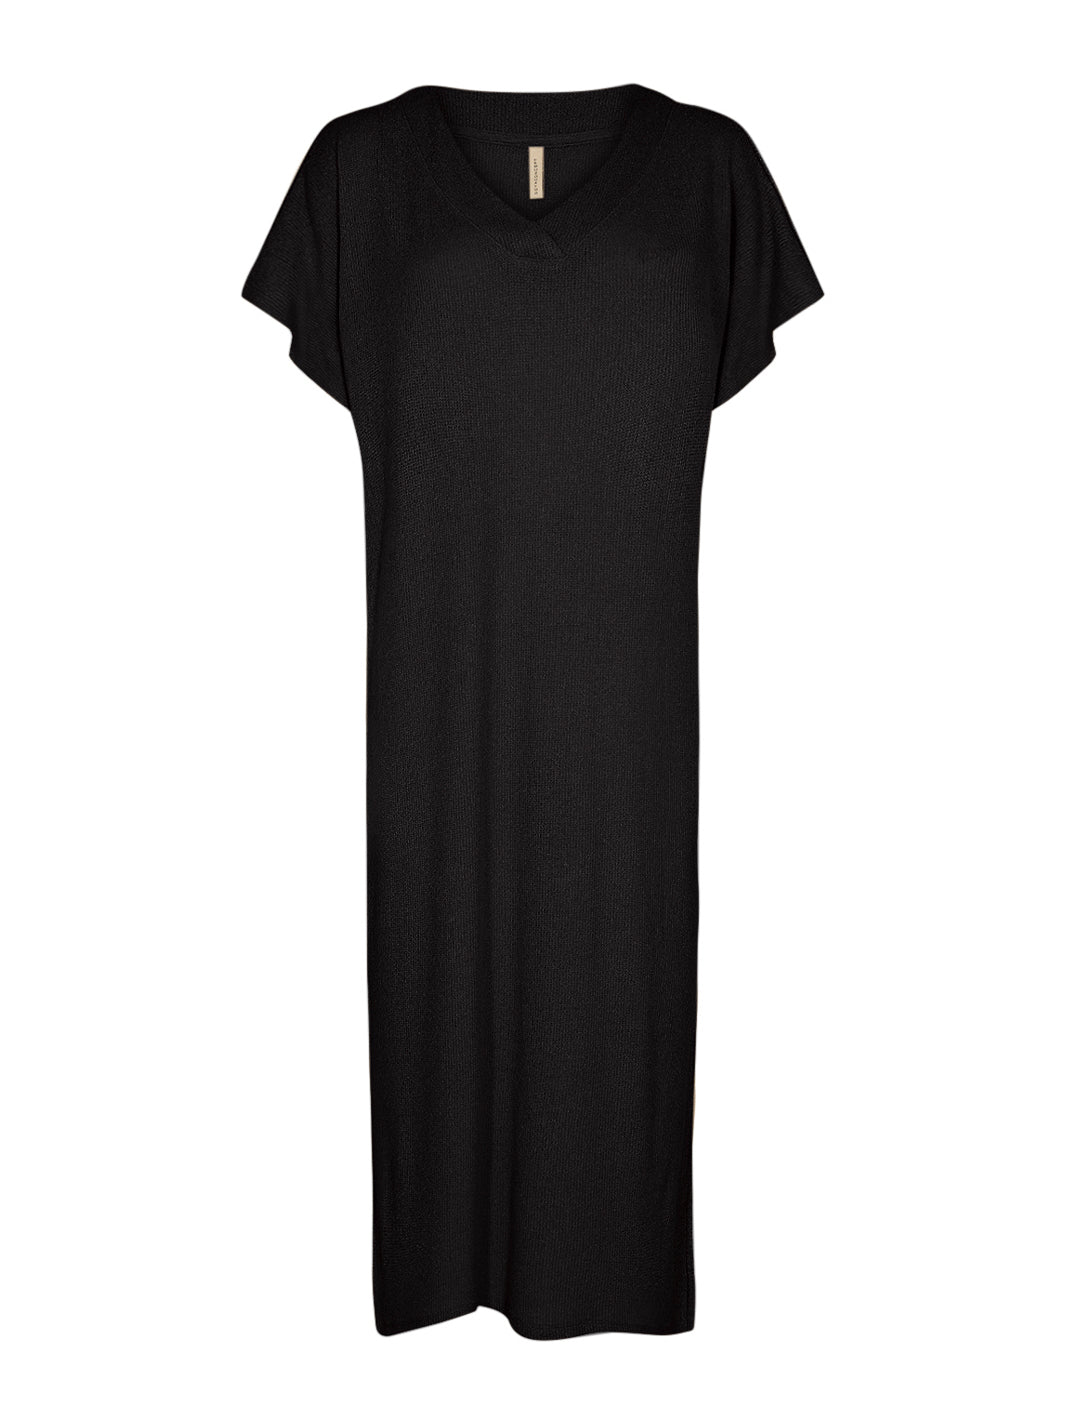 Soya Concept Delia 2 dress black - Online-Mode